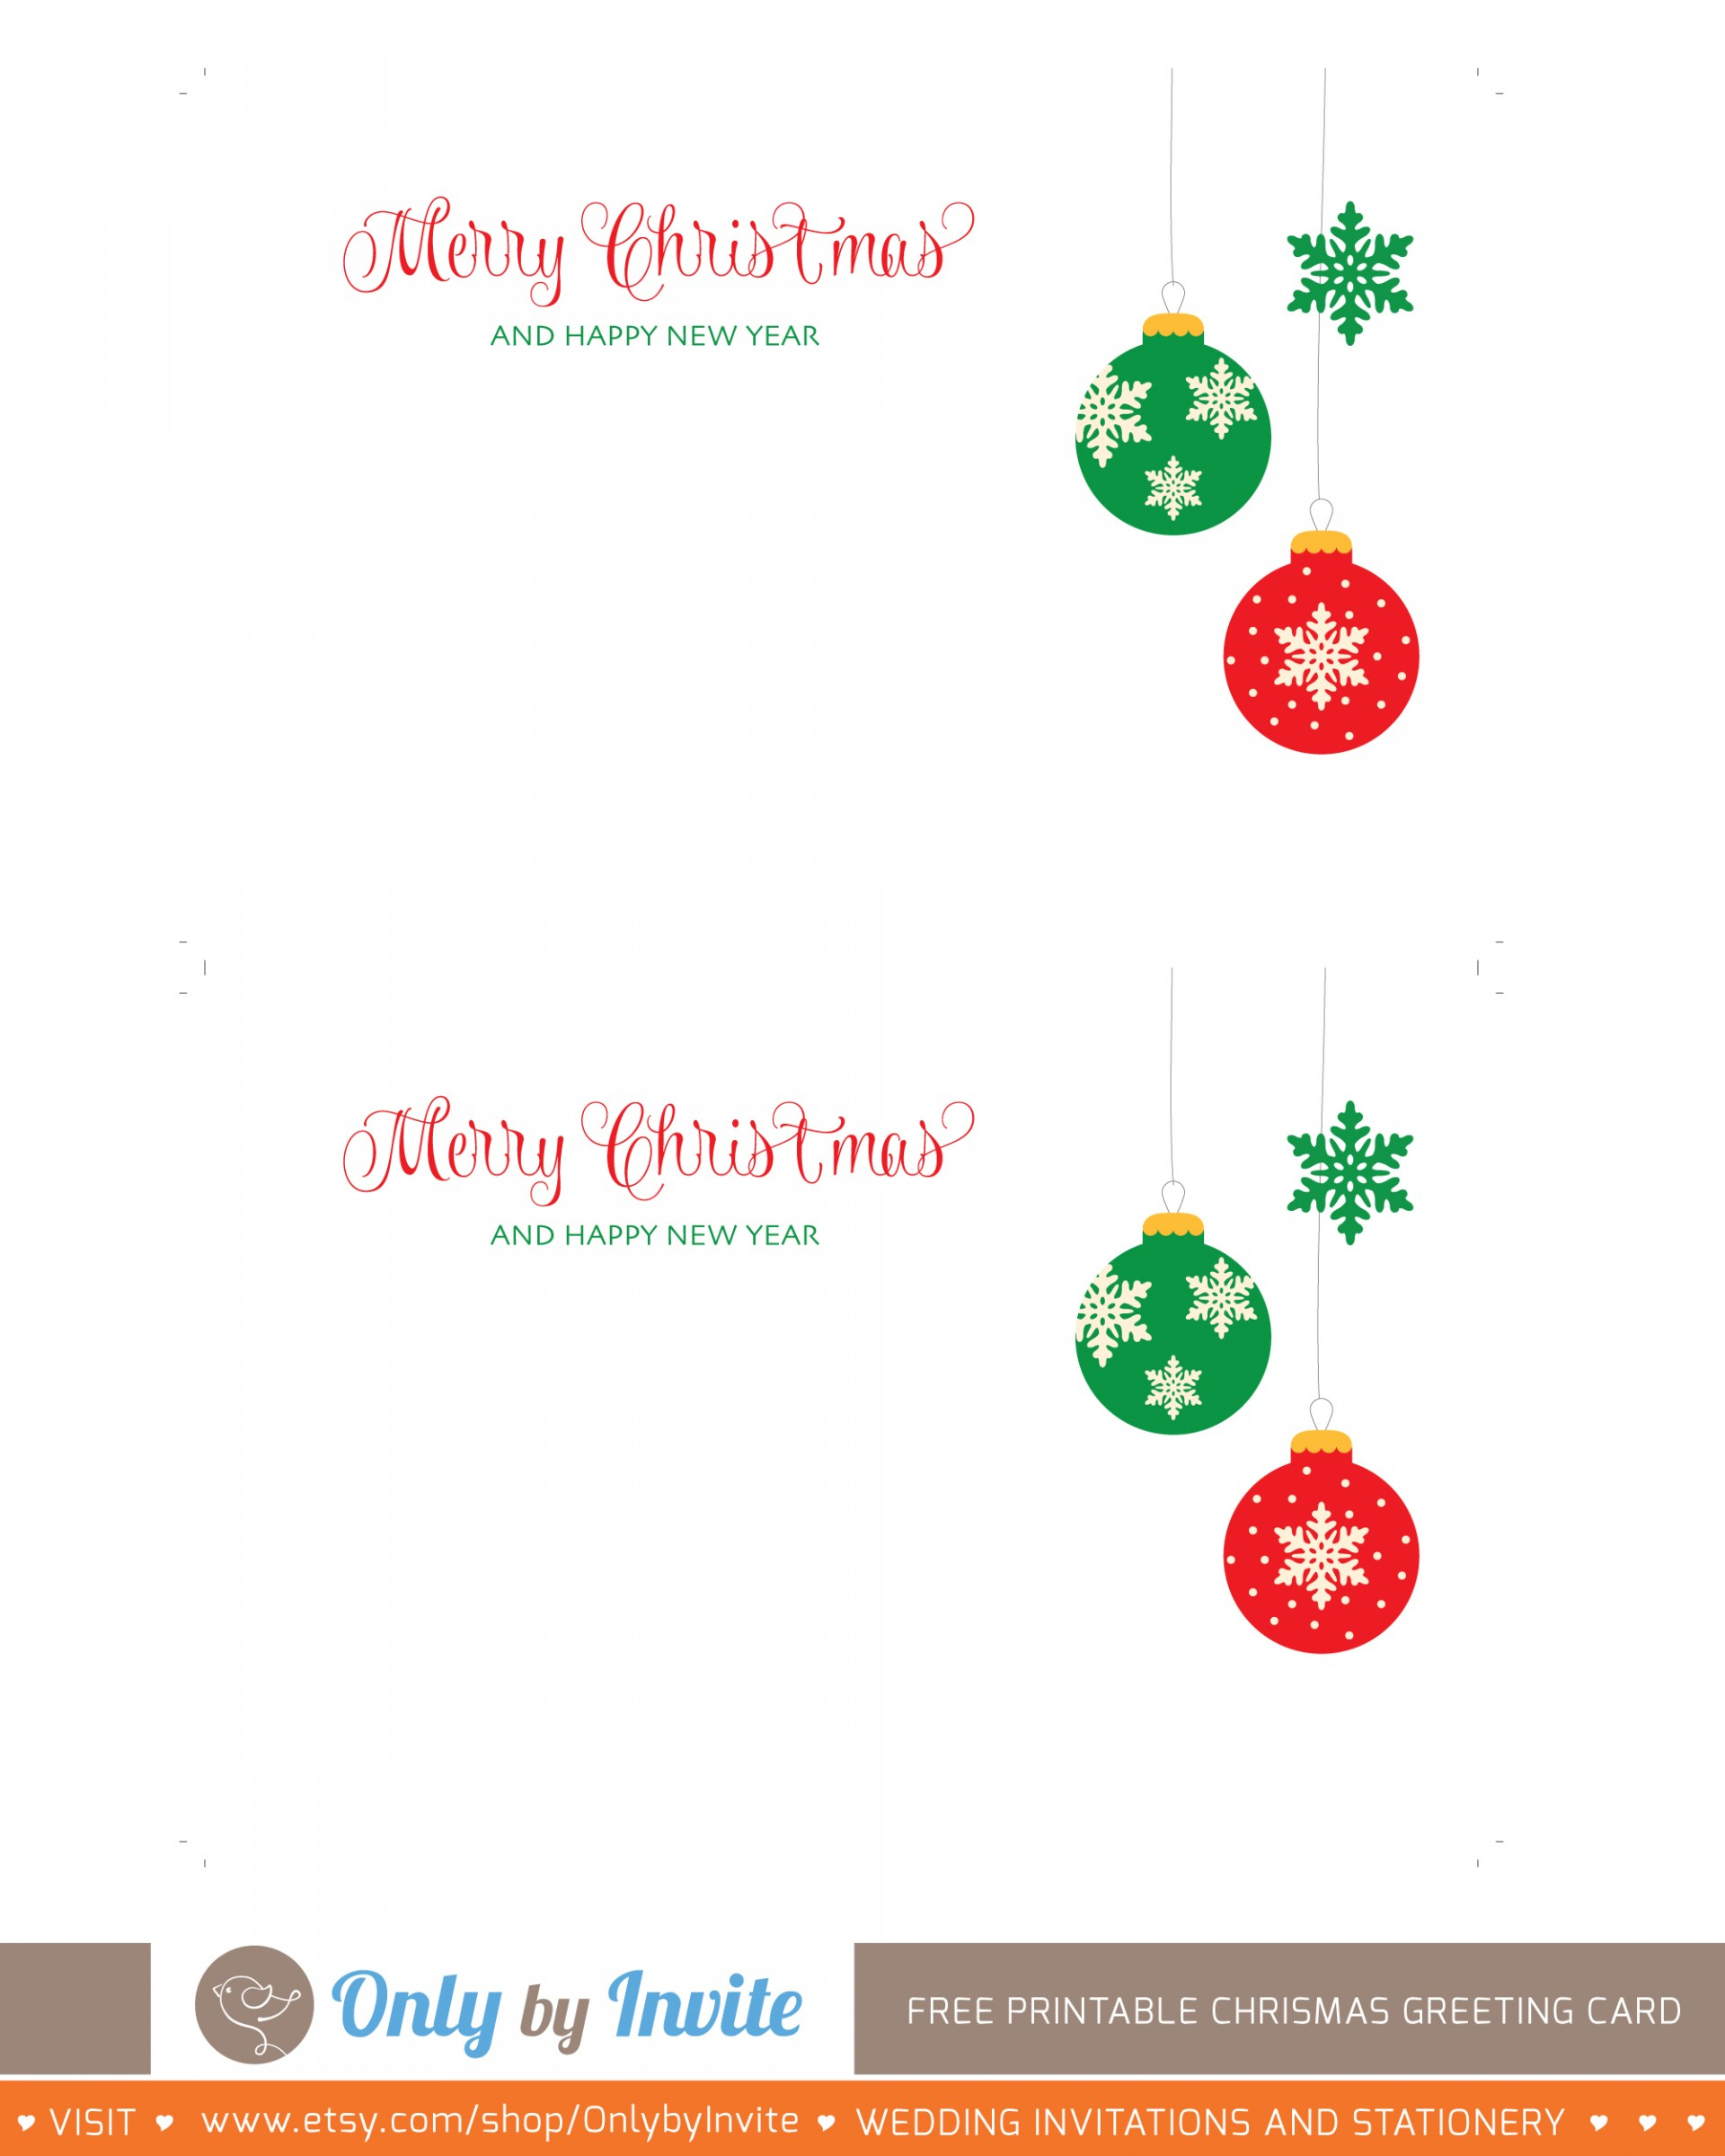 001 Free Printable Christmas Greeting Card Template Ideas ~ Ulyssesroom - Free Printable Christmas Card Templates